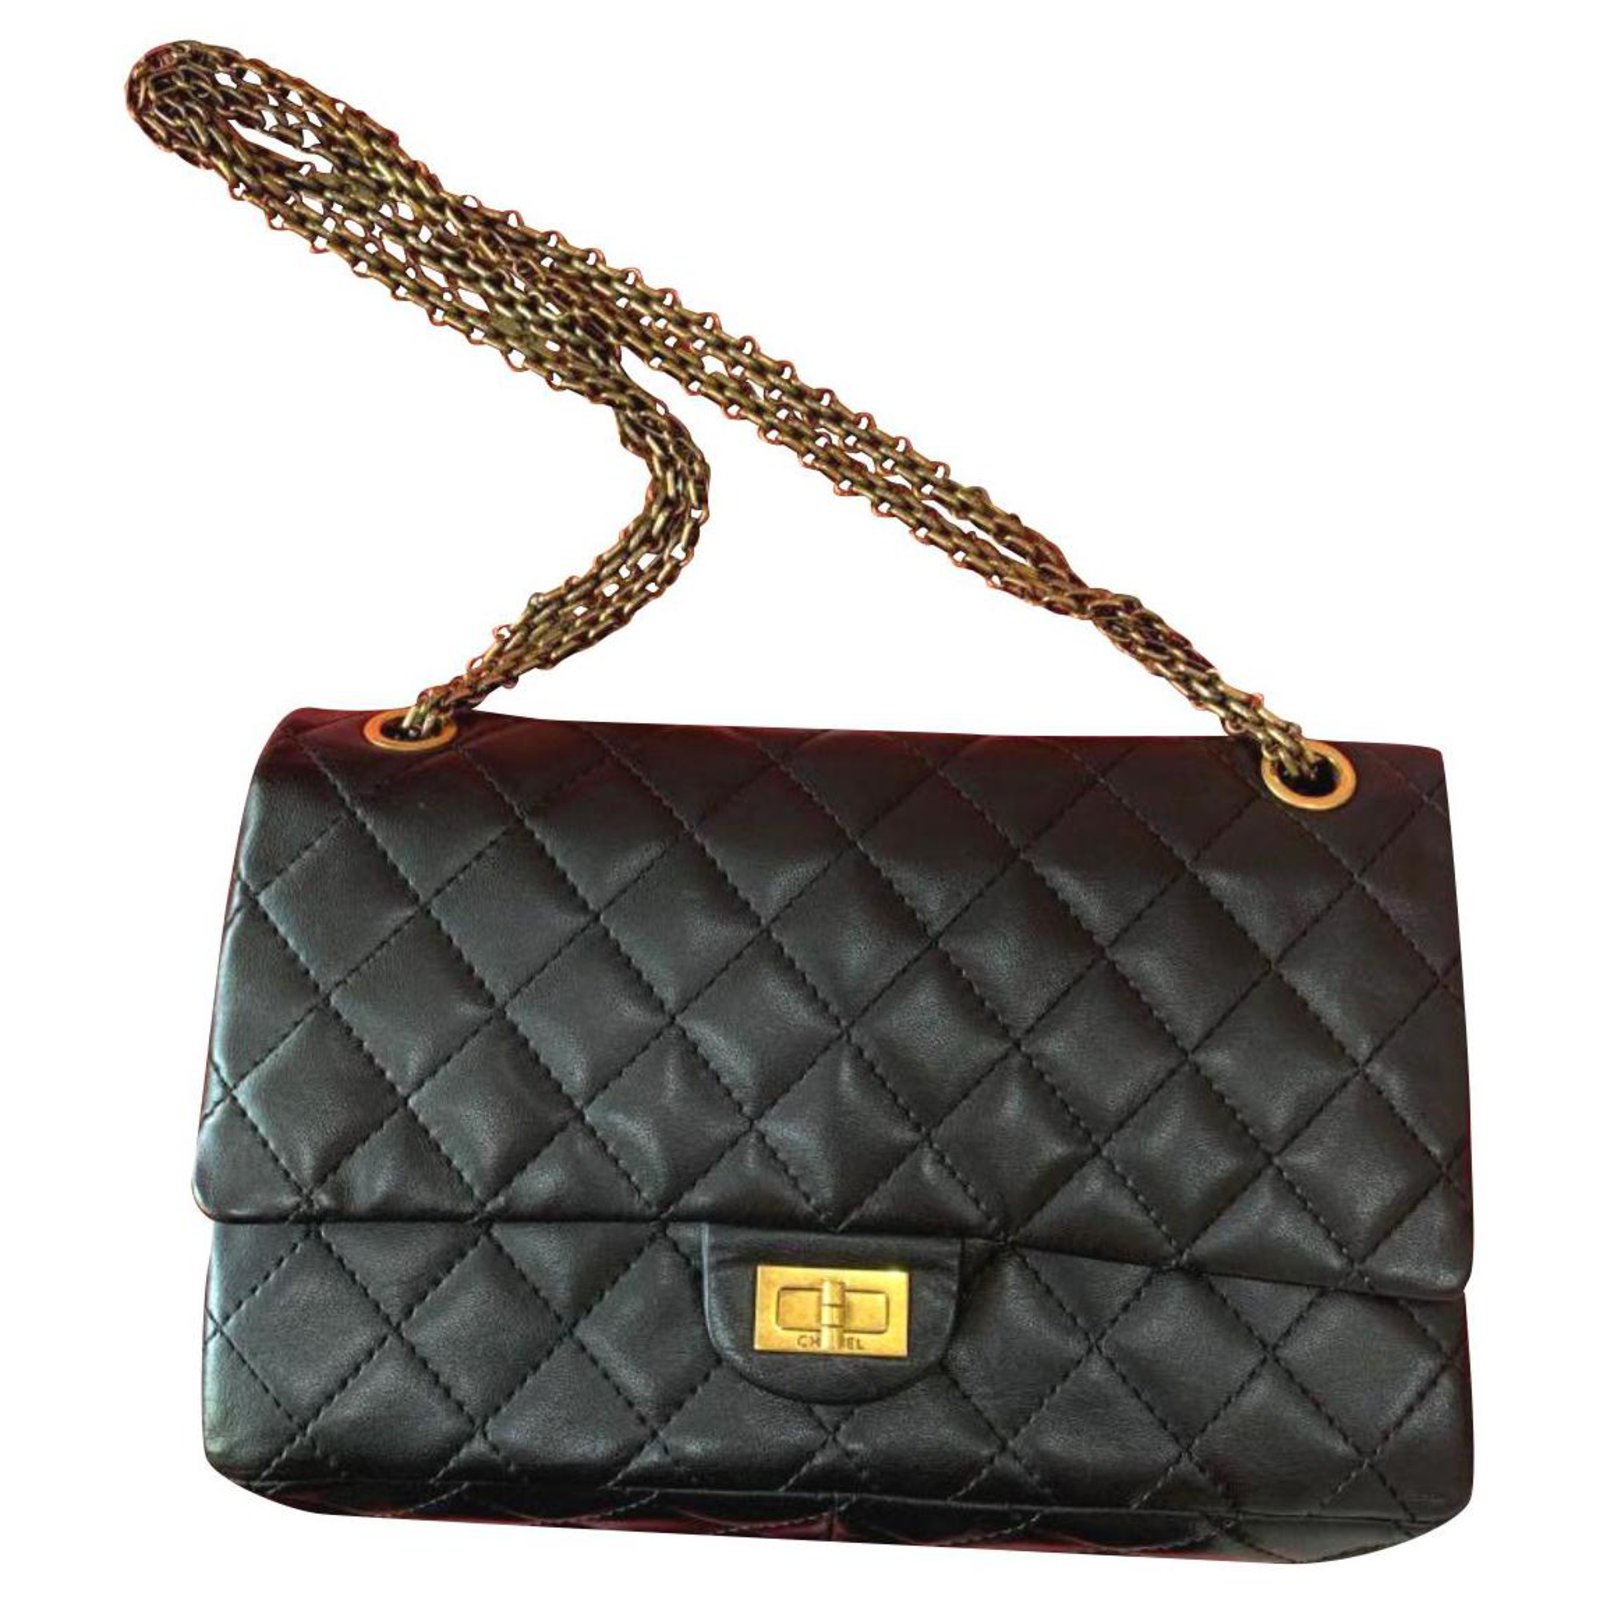 Chanel Chanel 2 55 Neuausgabe 225 klassische Tasche Handtaschen Leder 